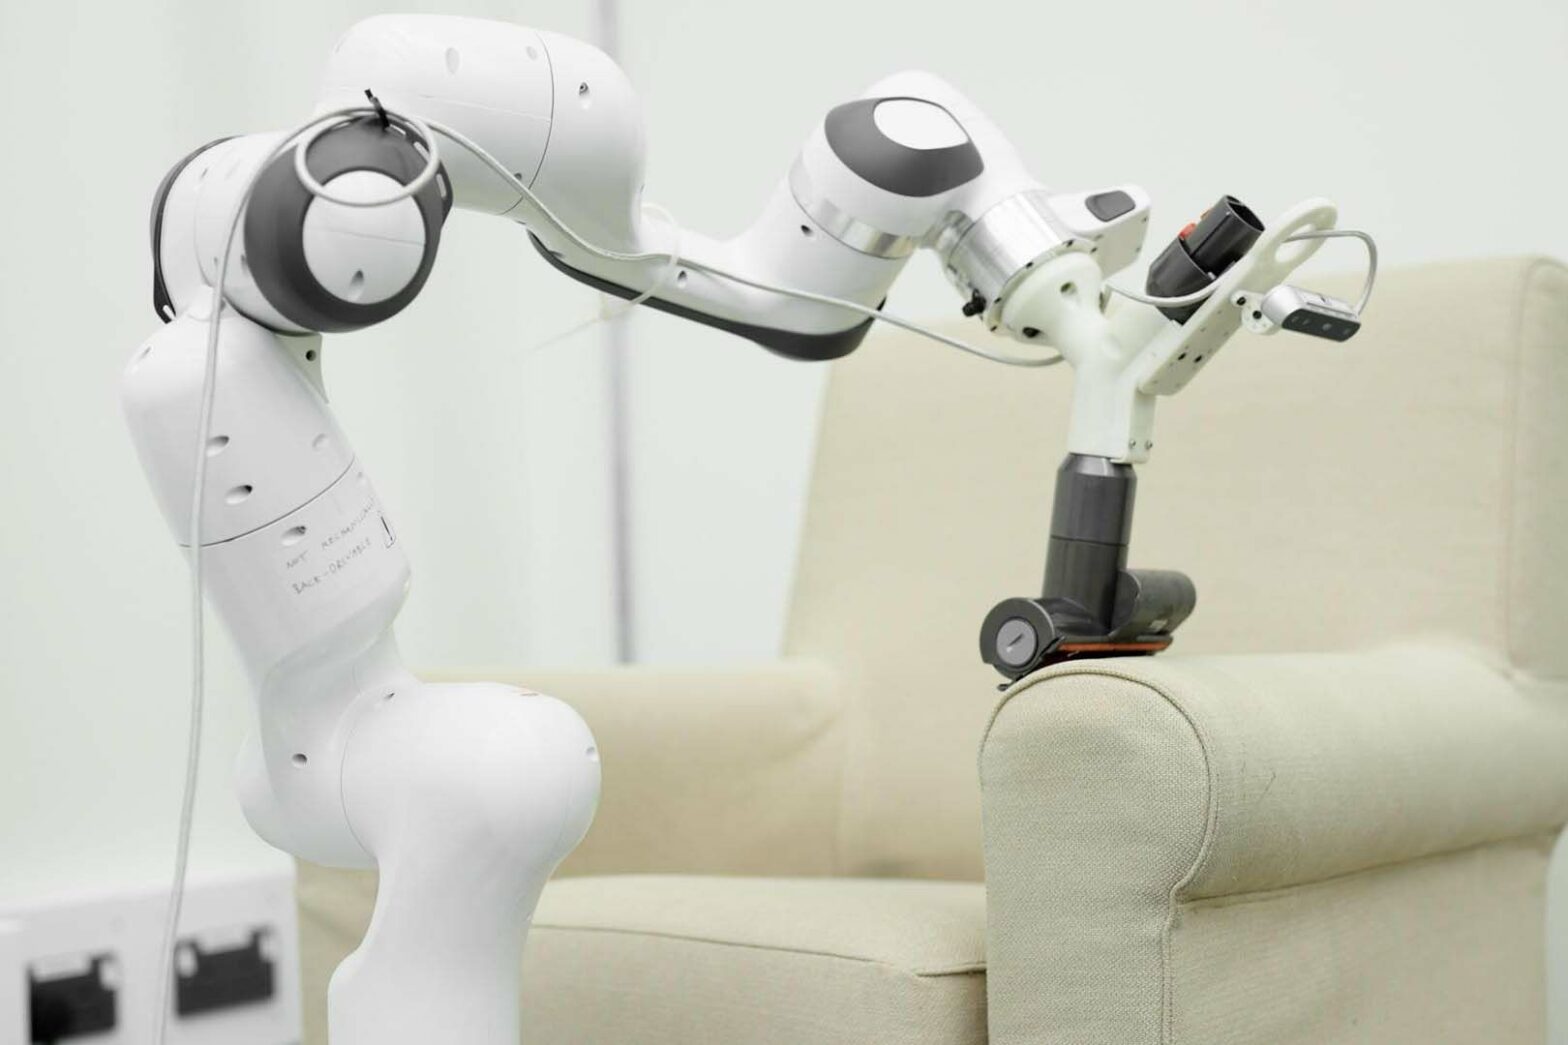 Dyson imagine les robots domestiques qui vous rendront la vie plus facile